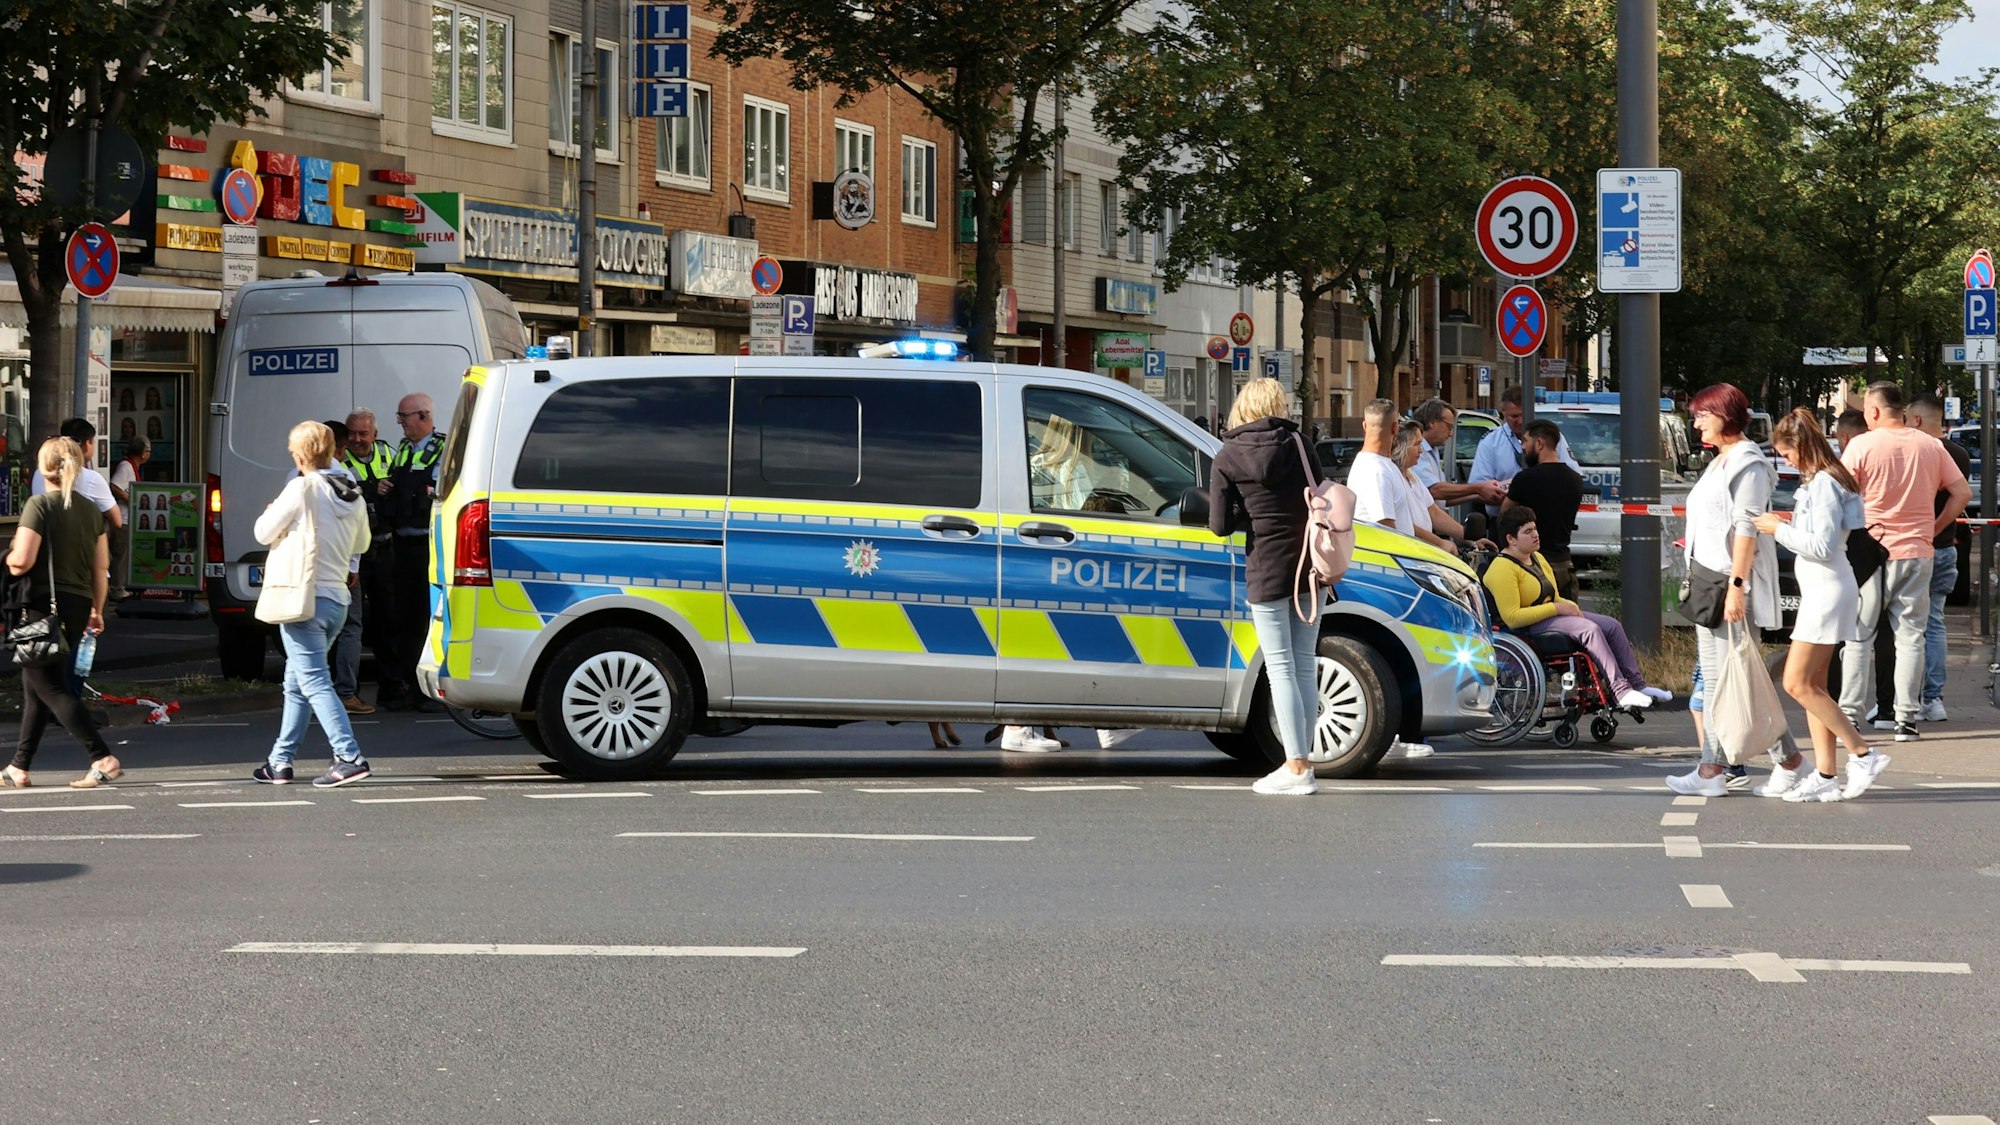 Die Polizei bei einem Einsatz in Köln-Kalk.

